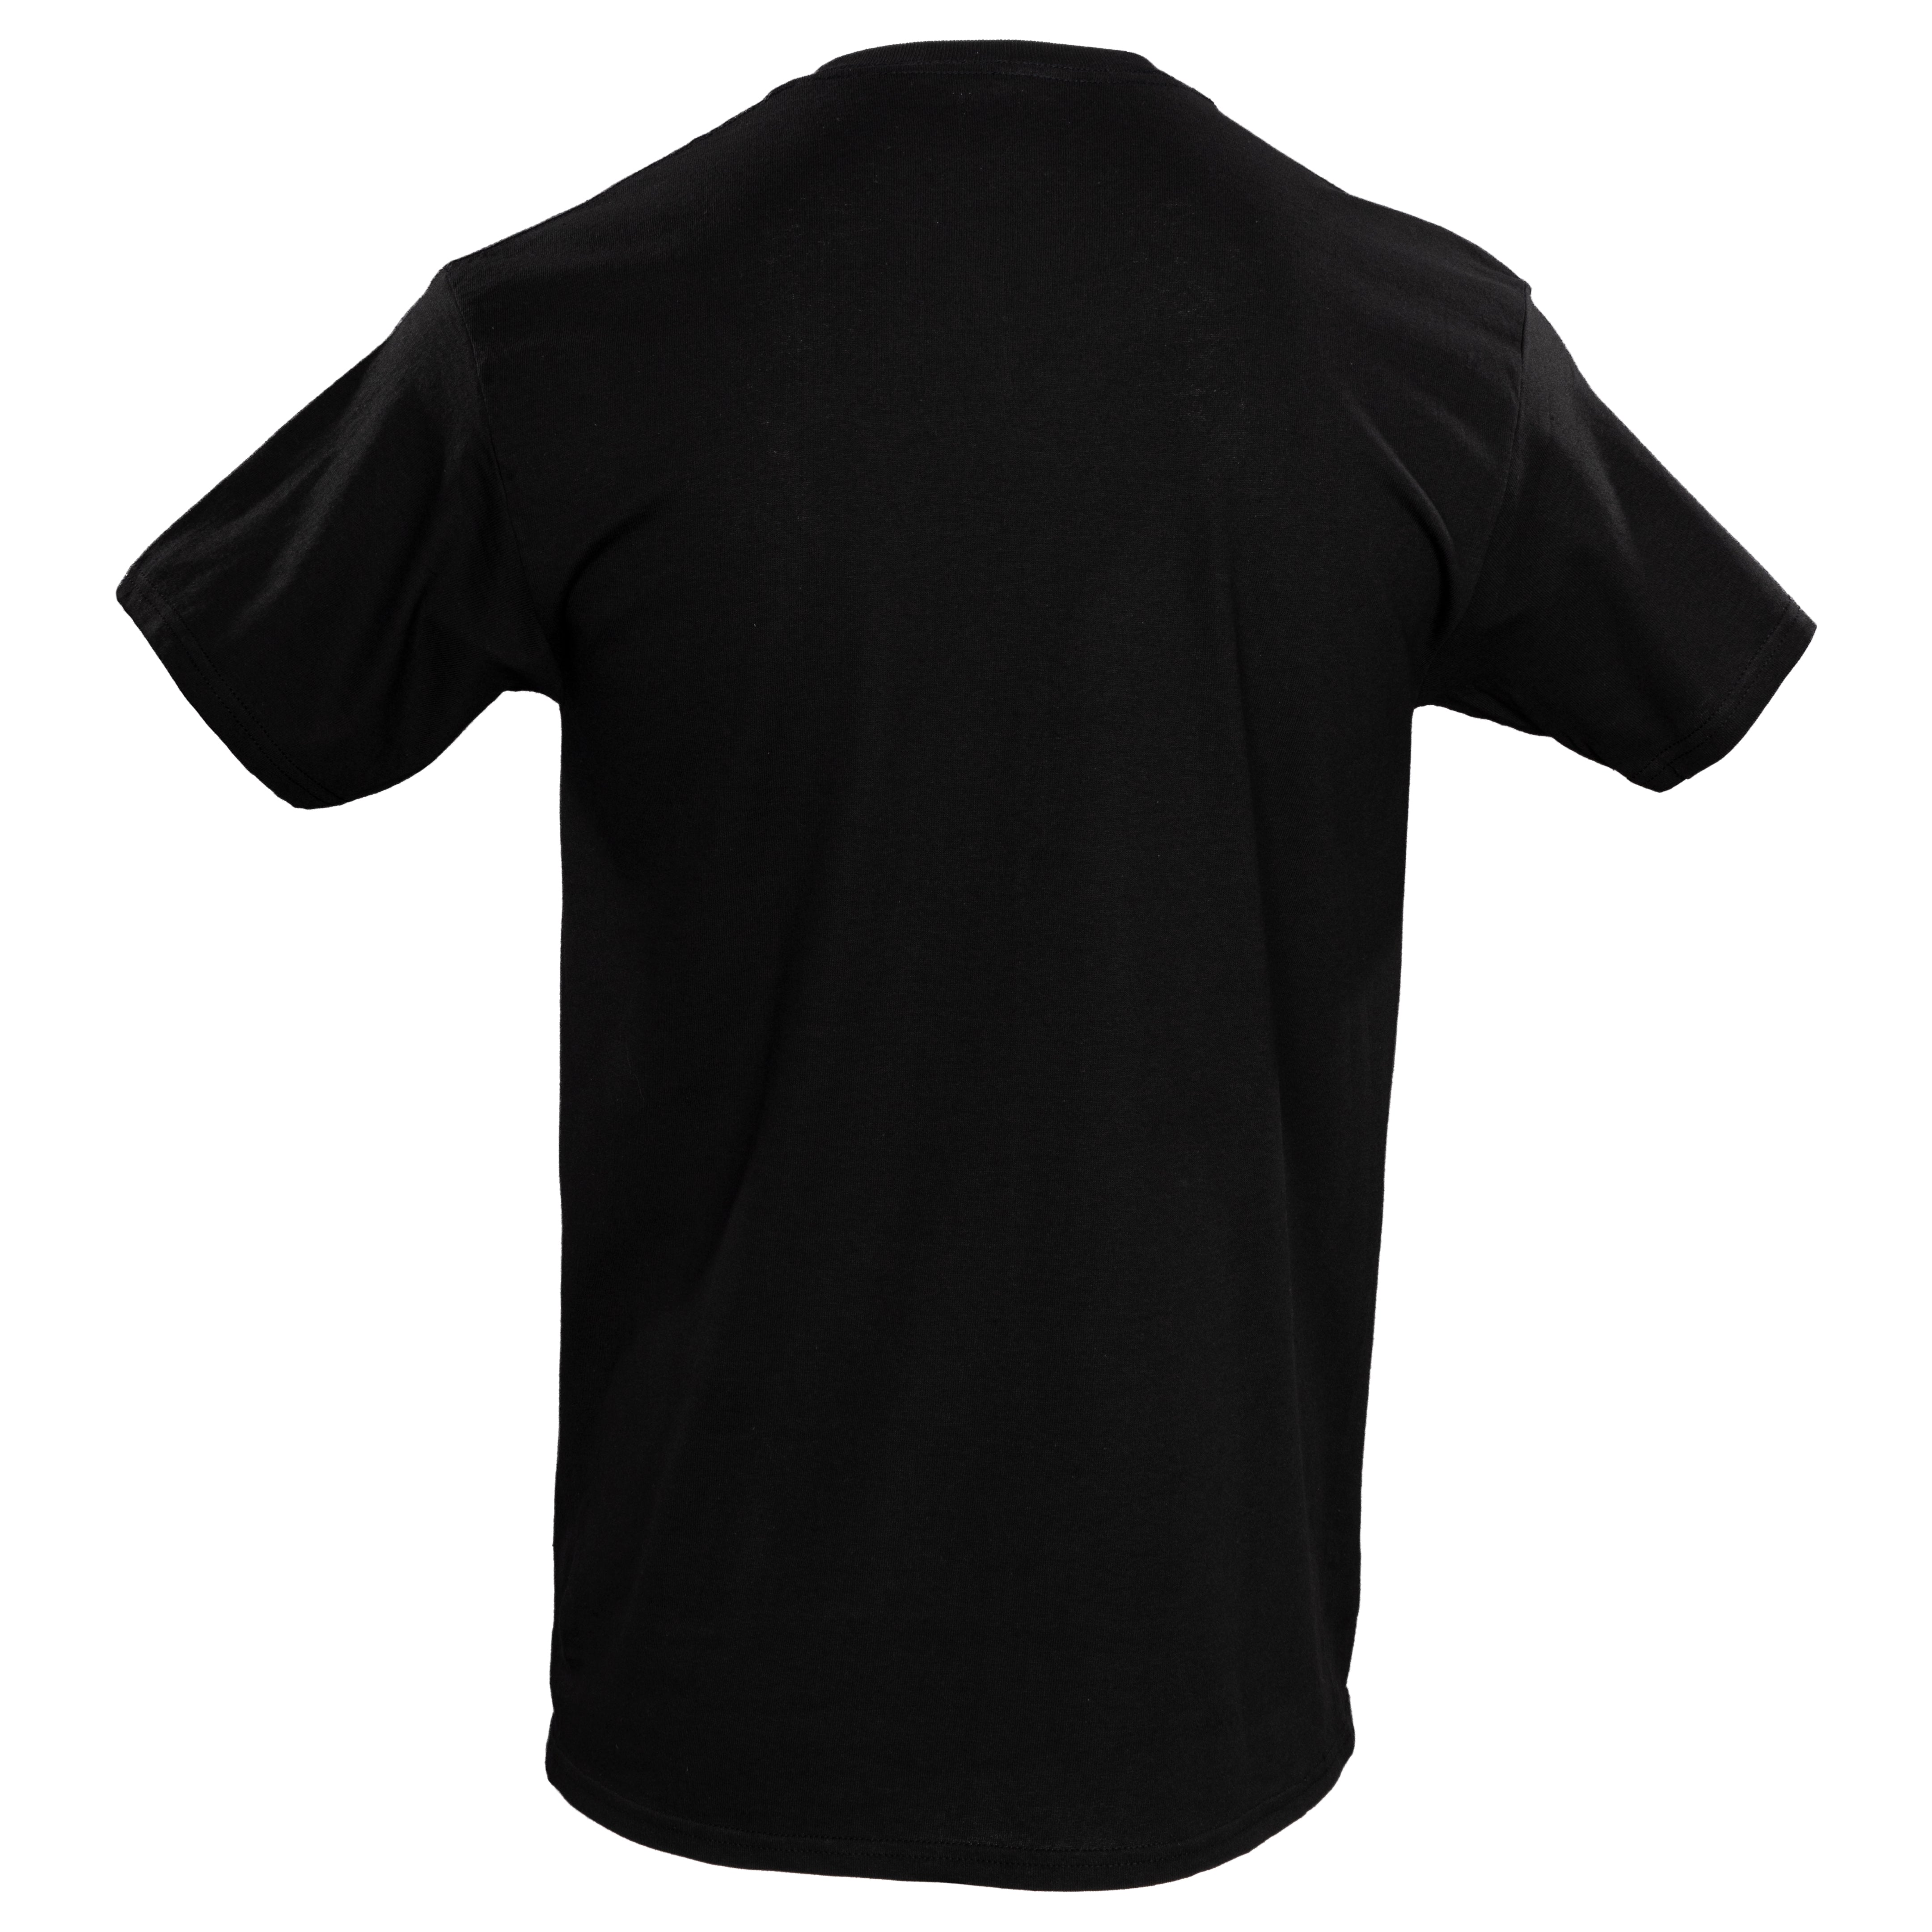 Dr Seuss Be Original Tip Hat Adult Short Sleeves Black T-Shirt